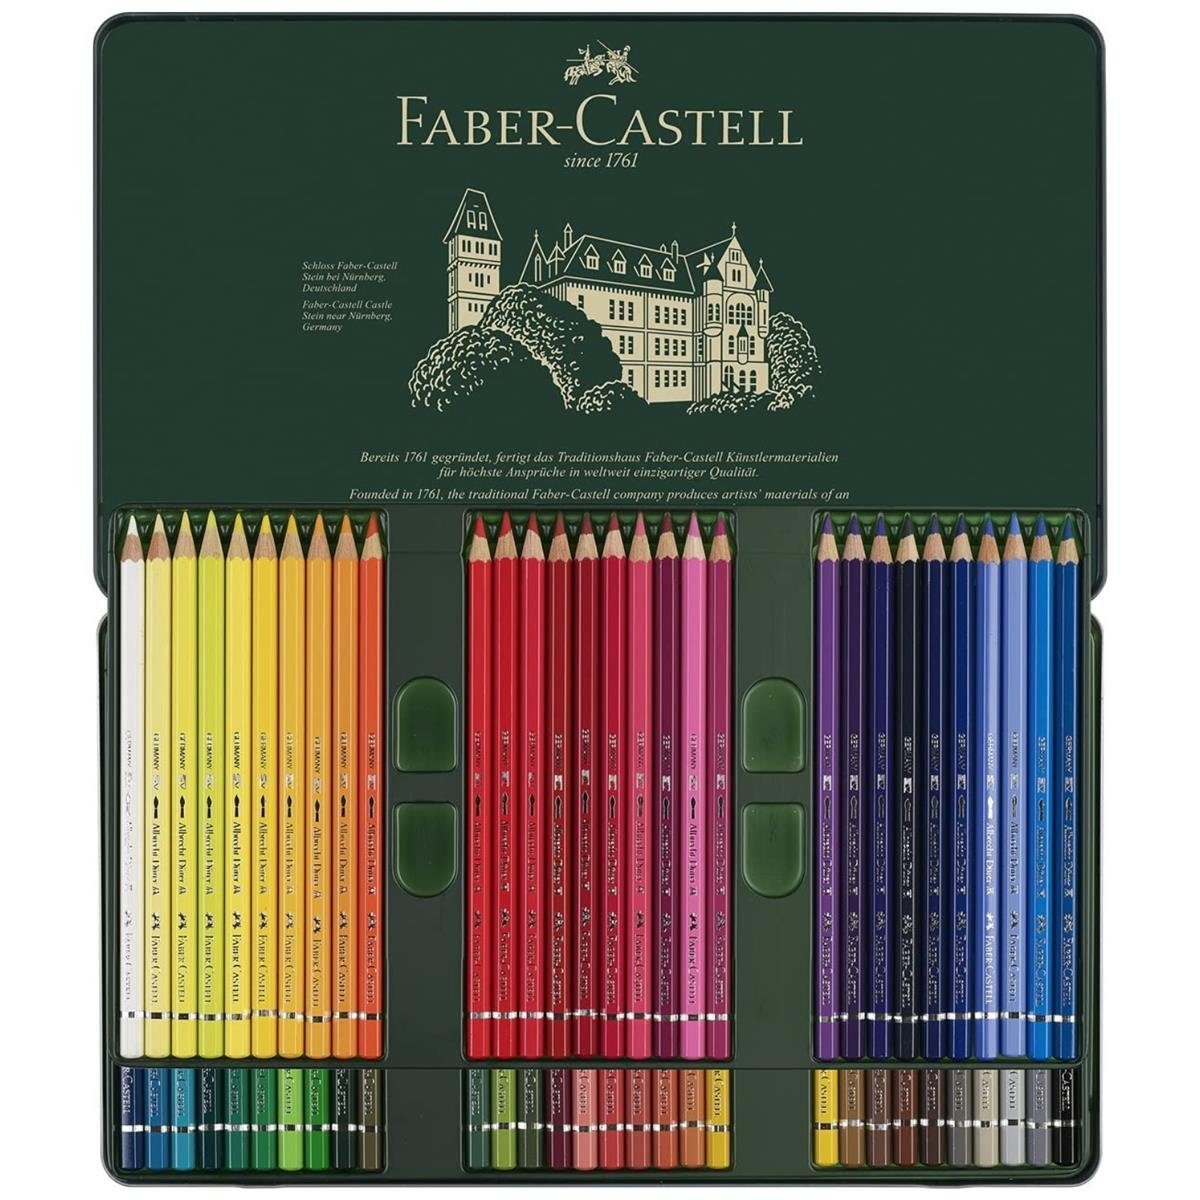 Faber-Castell Albrecht Aquarellstift - Faber-Castell Dürer Aquarellstifte Metalletui 60er